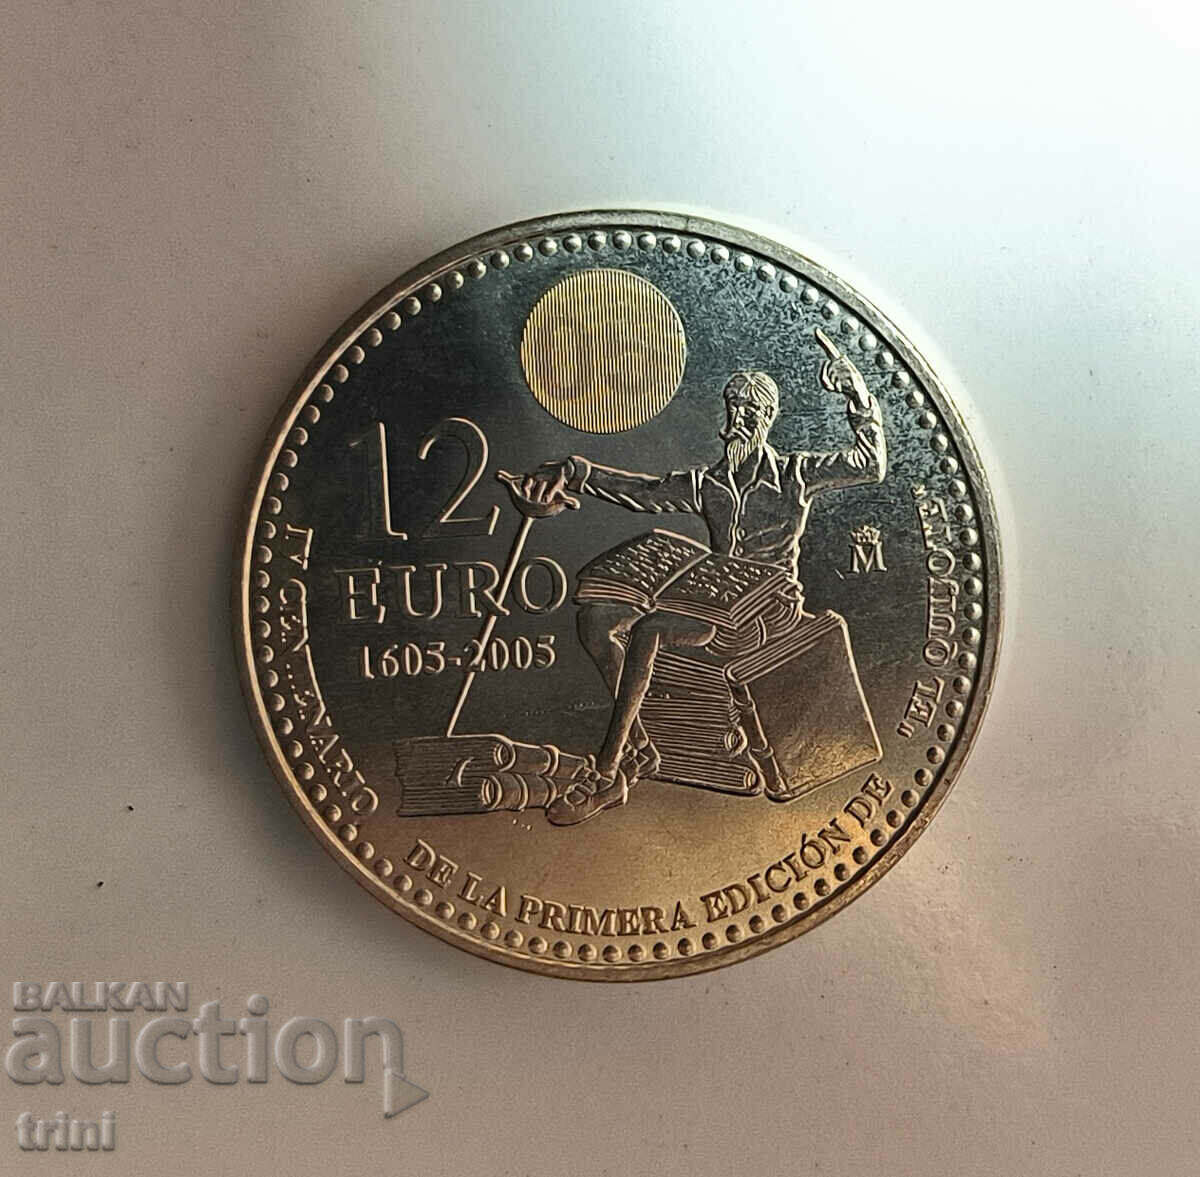 Испания 12 евро 2005 400 години Дон Кихот  д133